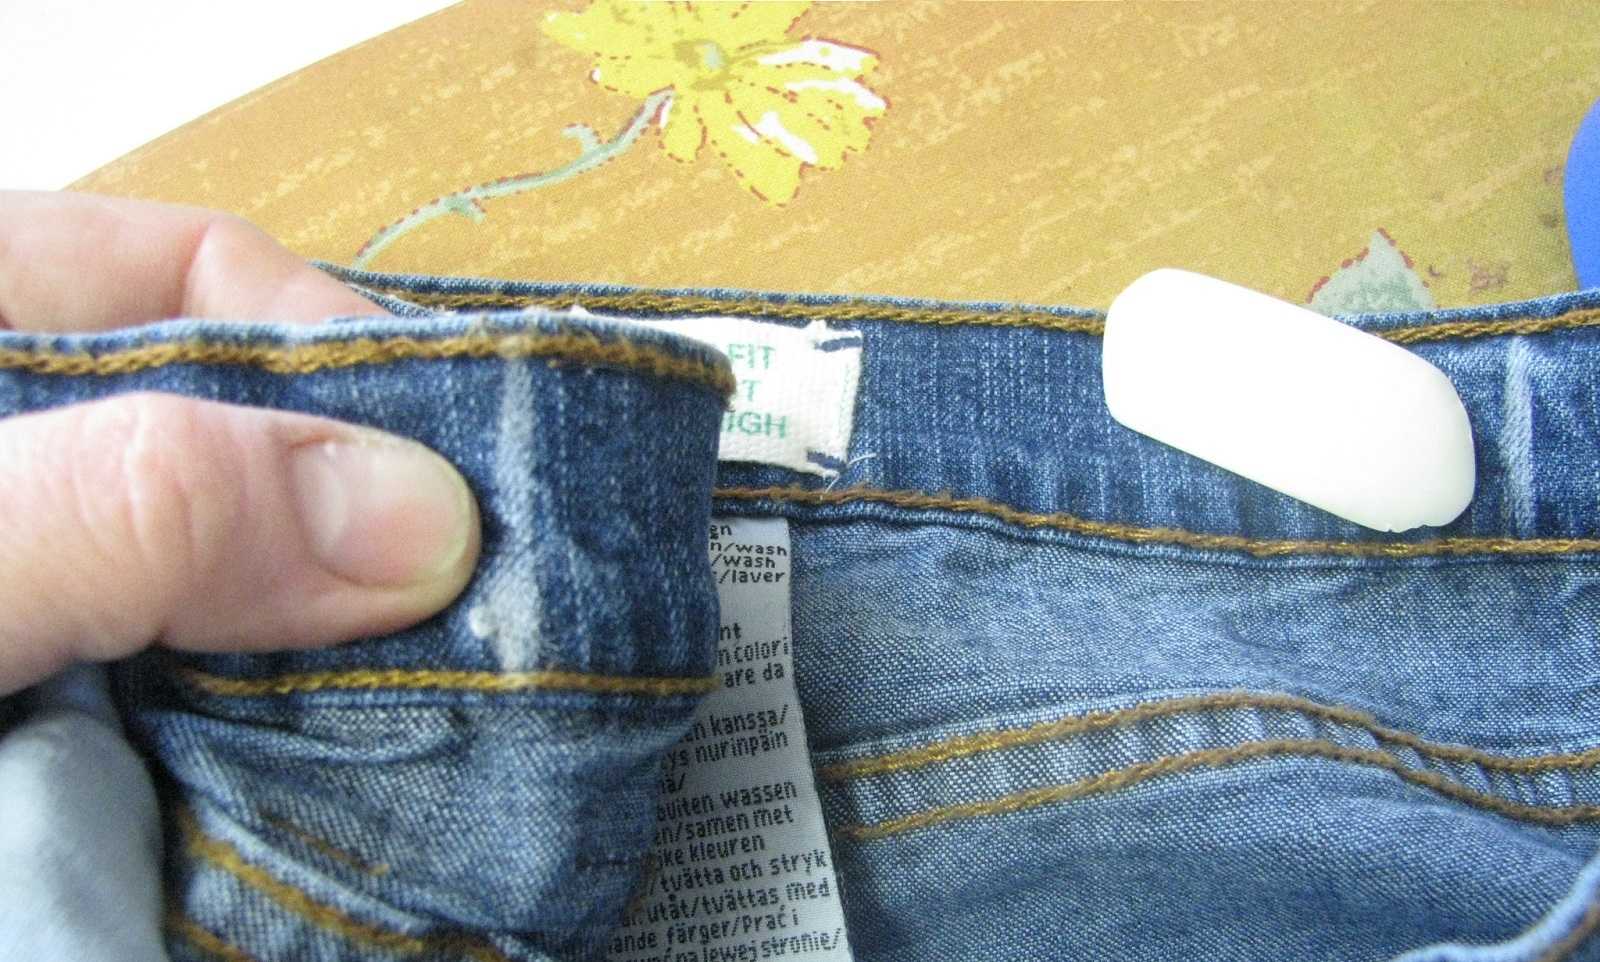 Как стирать джинсы в стиральной машине-автомат (при какой температуре, на каком режиме), как правильно и как часто, чтобы они не потеряли цвет?